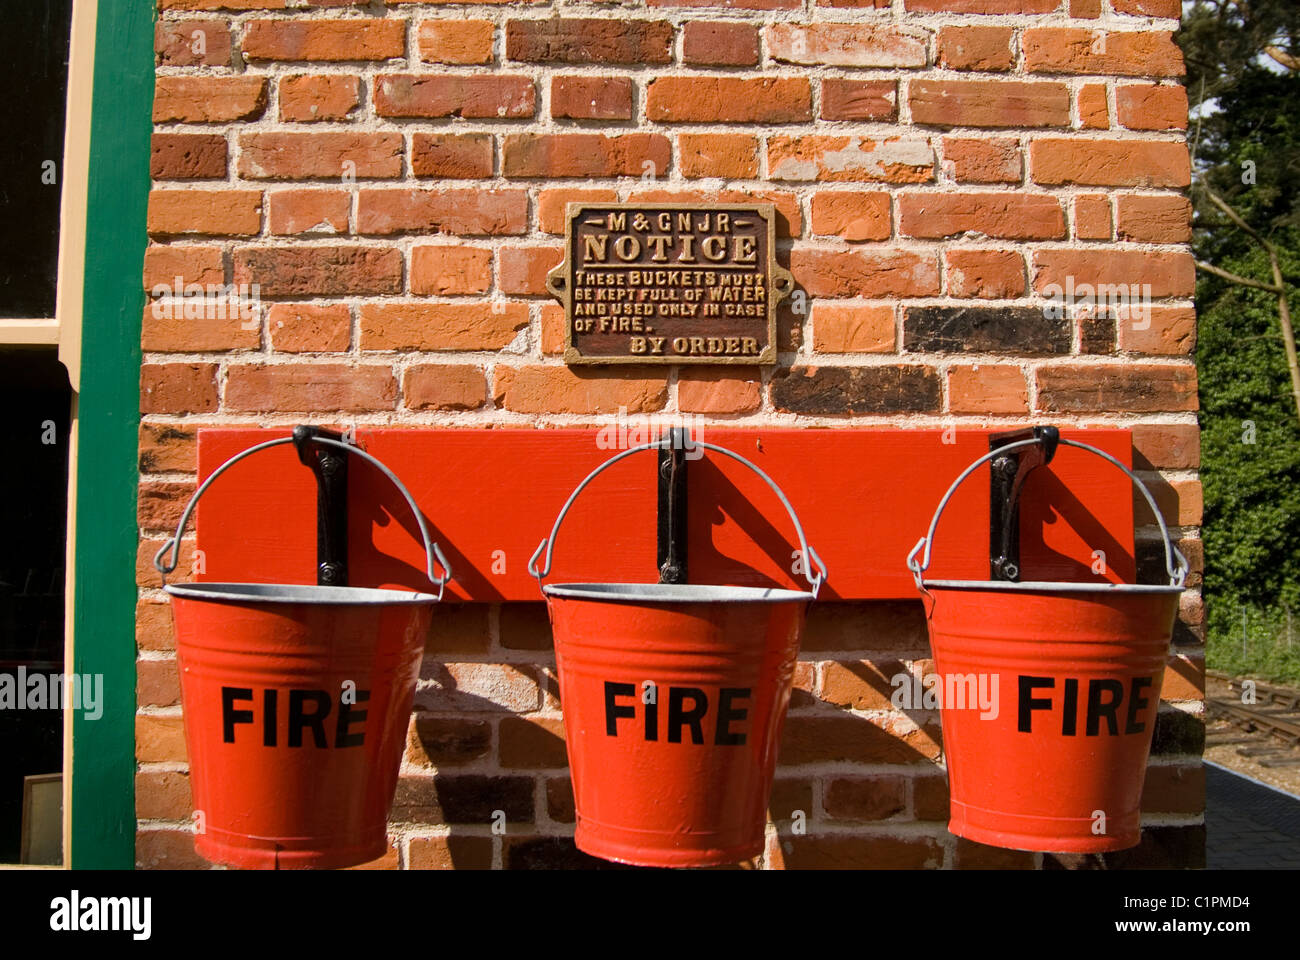 L'Angleterre, Norfolk, Weybourne, trois seaux d'incendie rouge sur le mur Banque D'Images